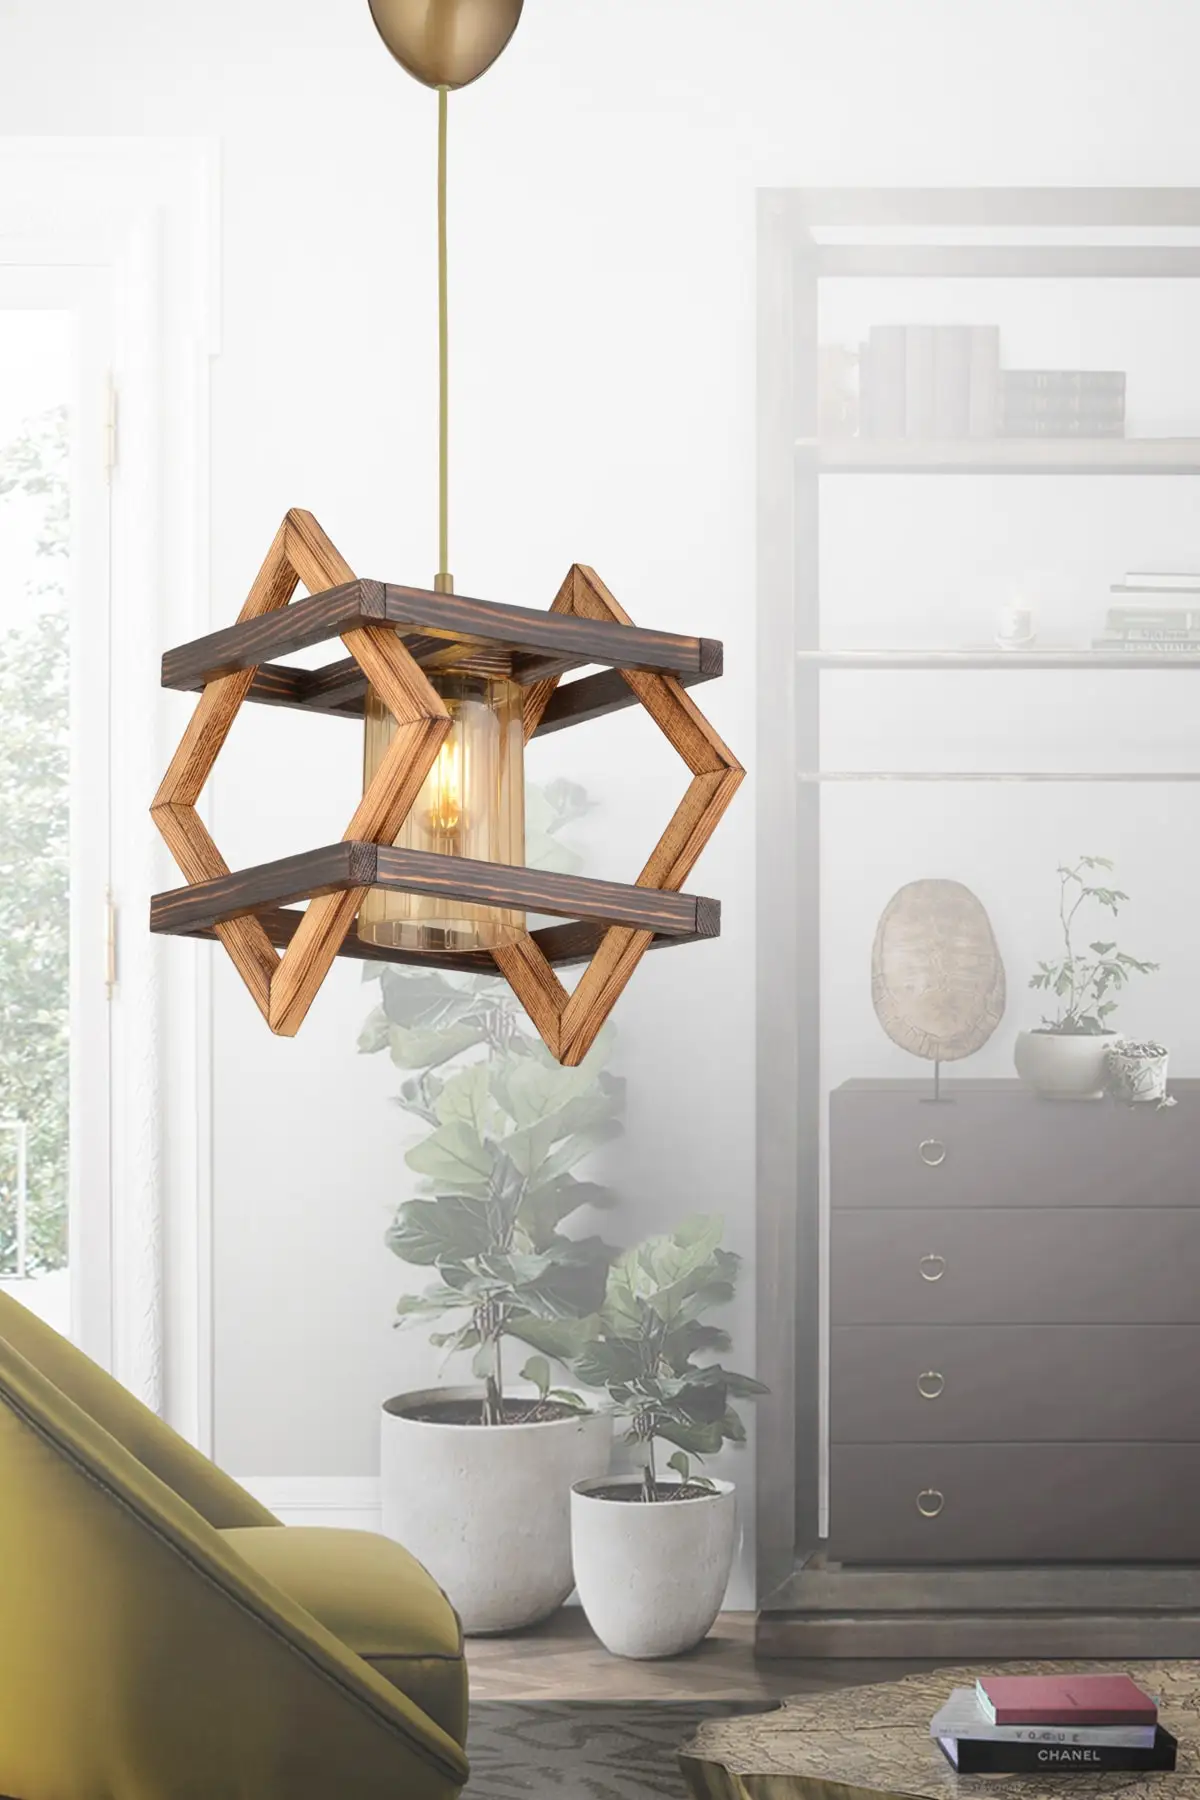 لوستر چوبی برای کافه با طرح هندسی 